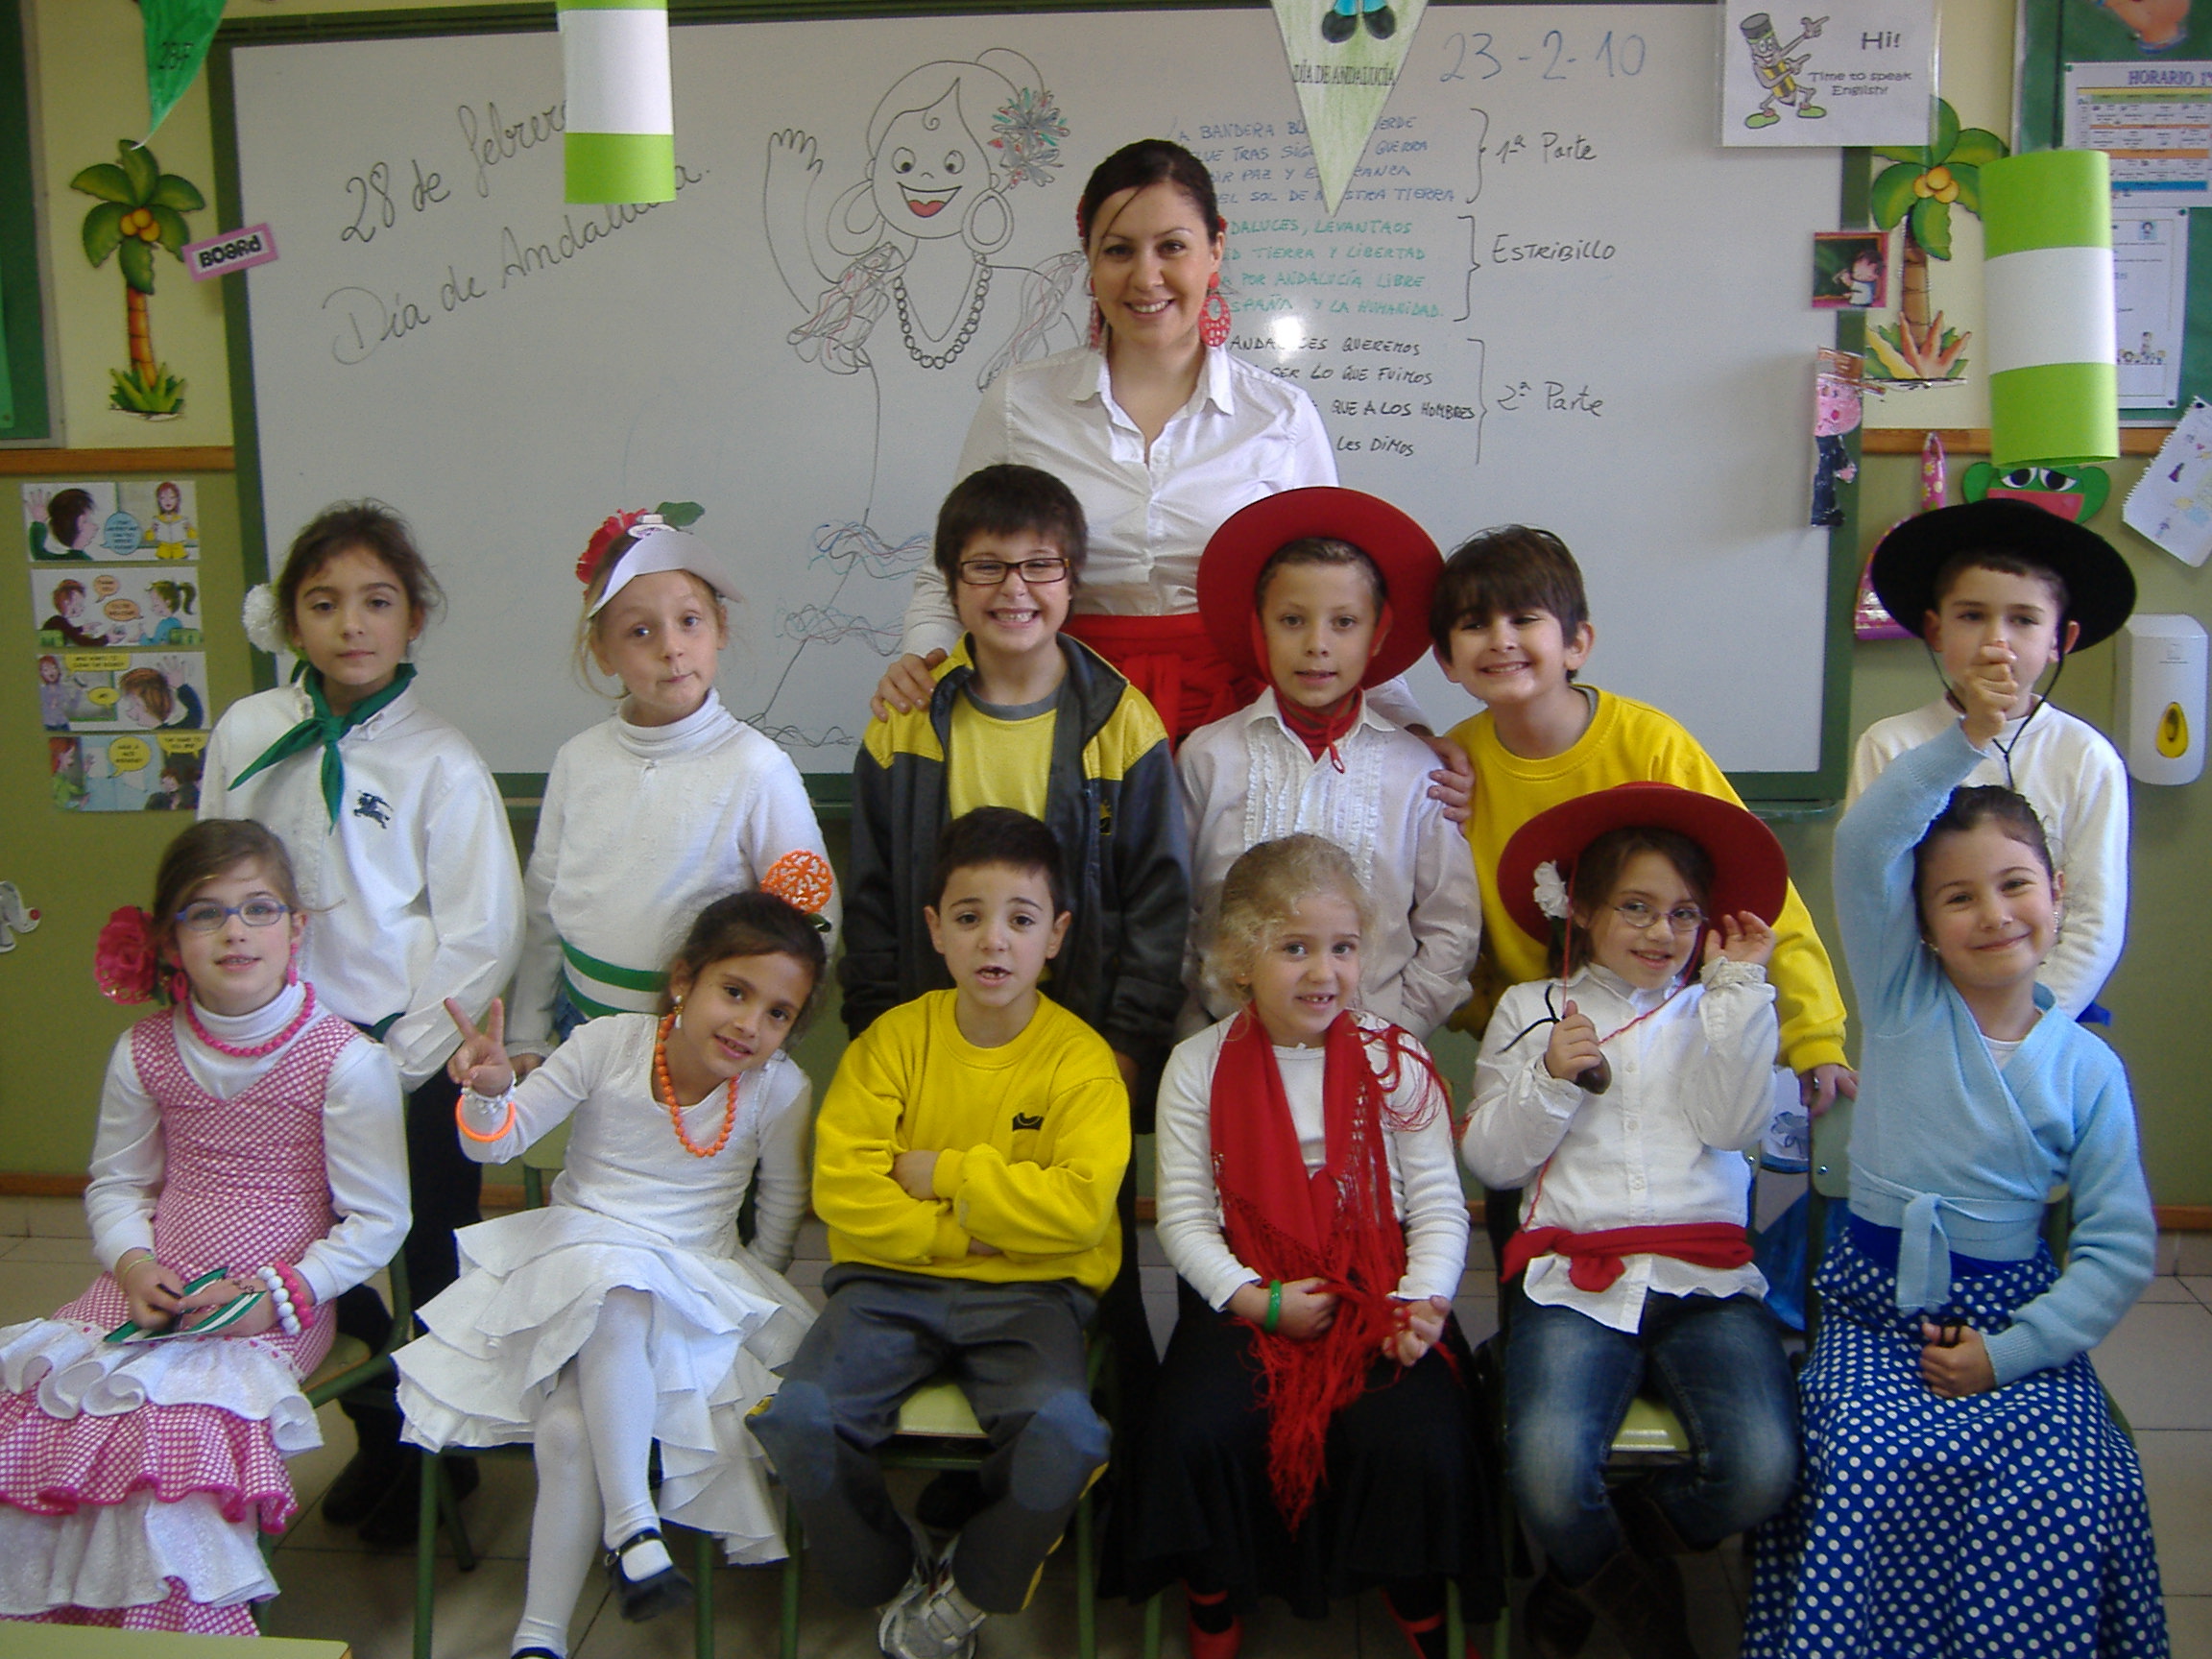 La profesora Noelia Molinillo, con los alumnos de sus clase